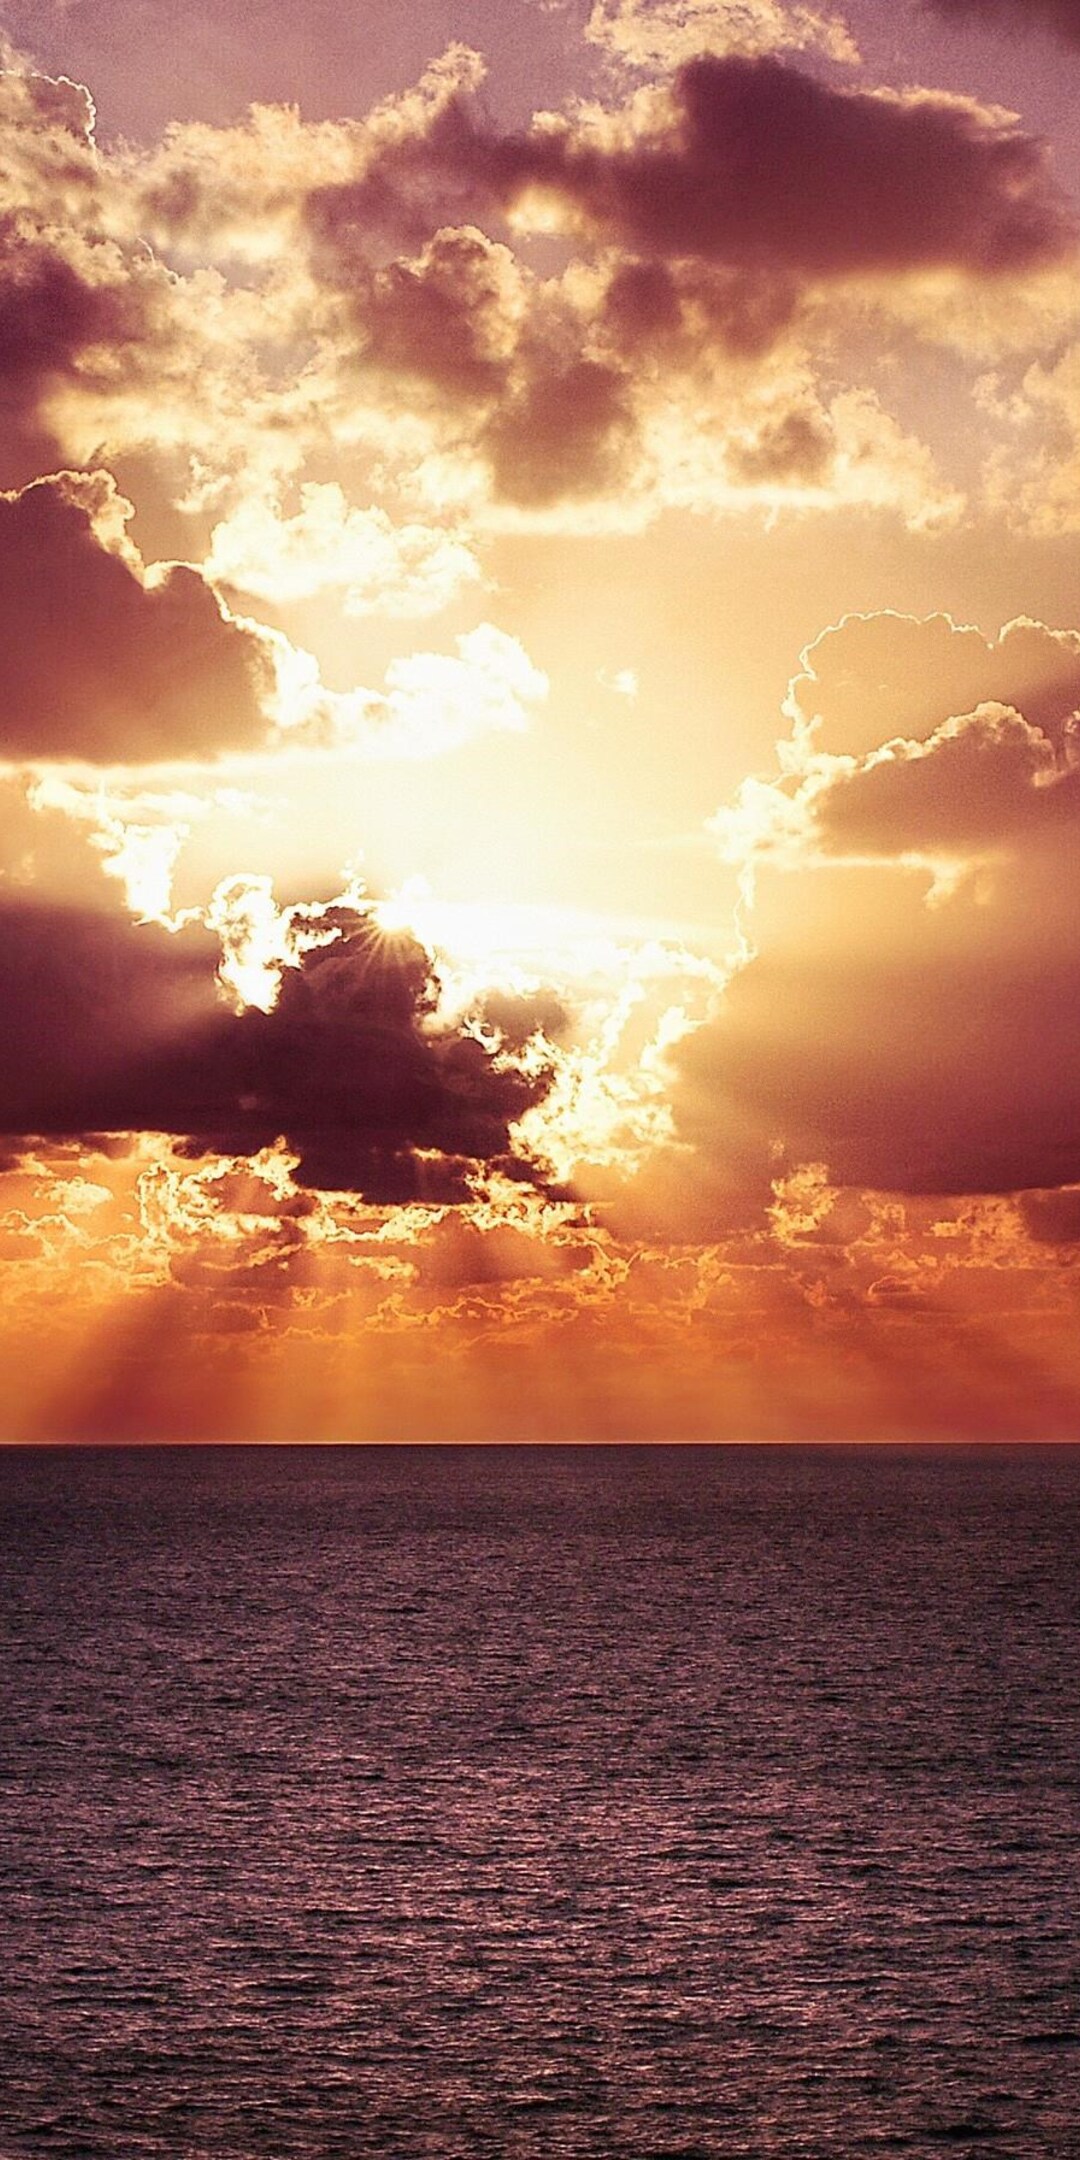 ocean-horizon-sunset.jpg